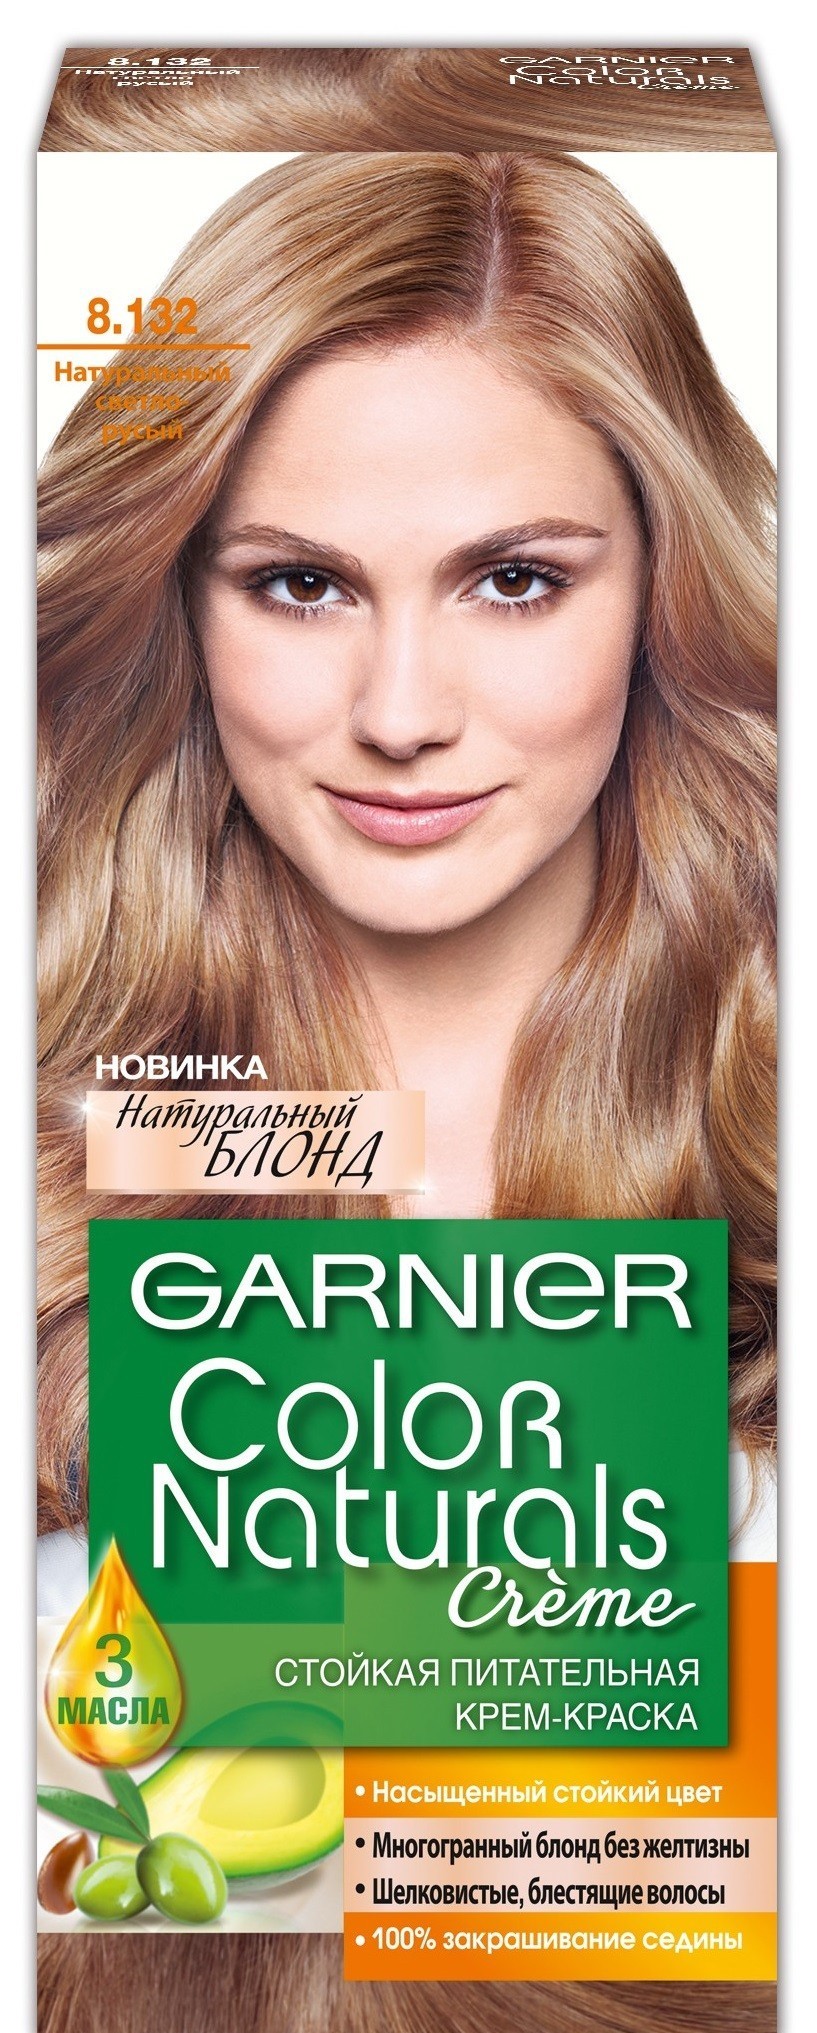 Натуральные краски для волос светлых оттенков